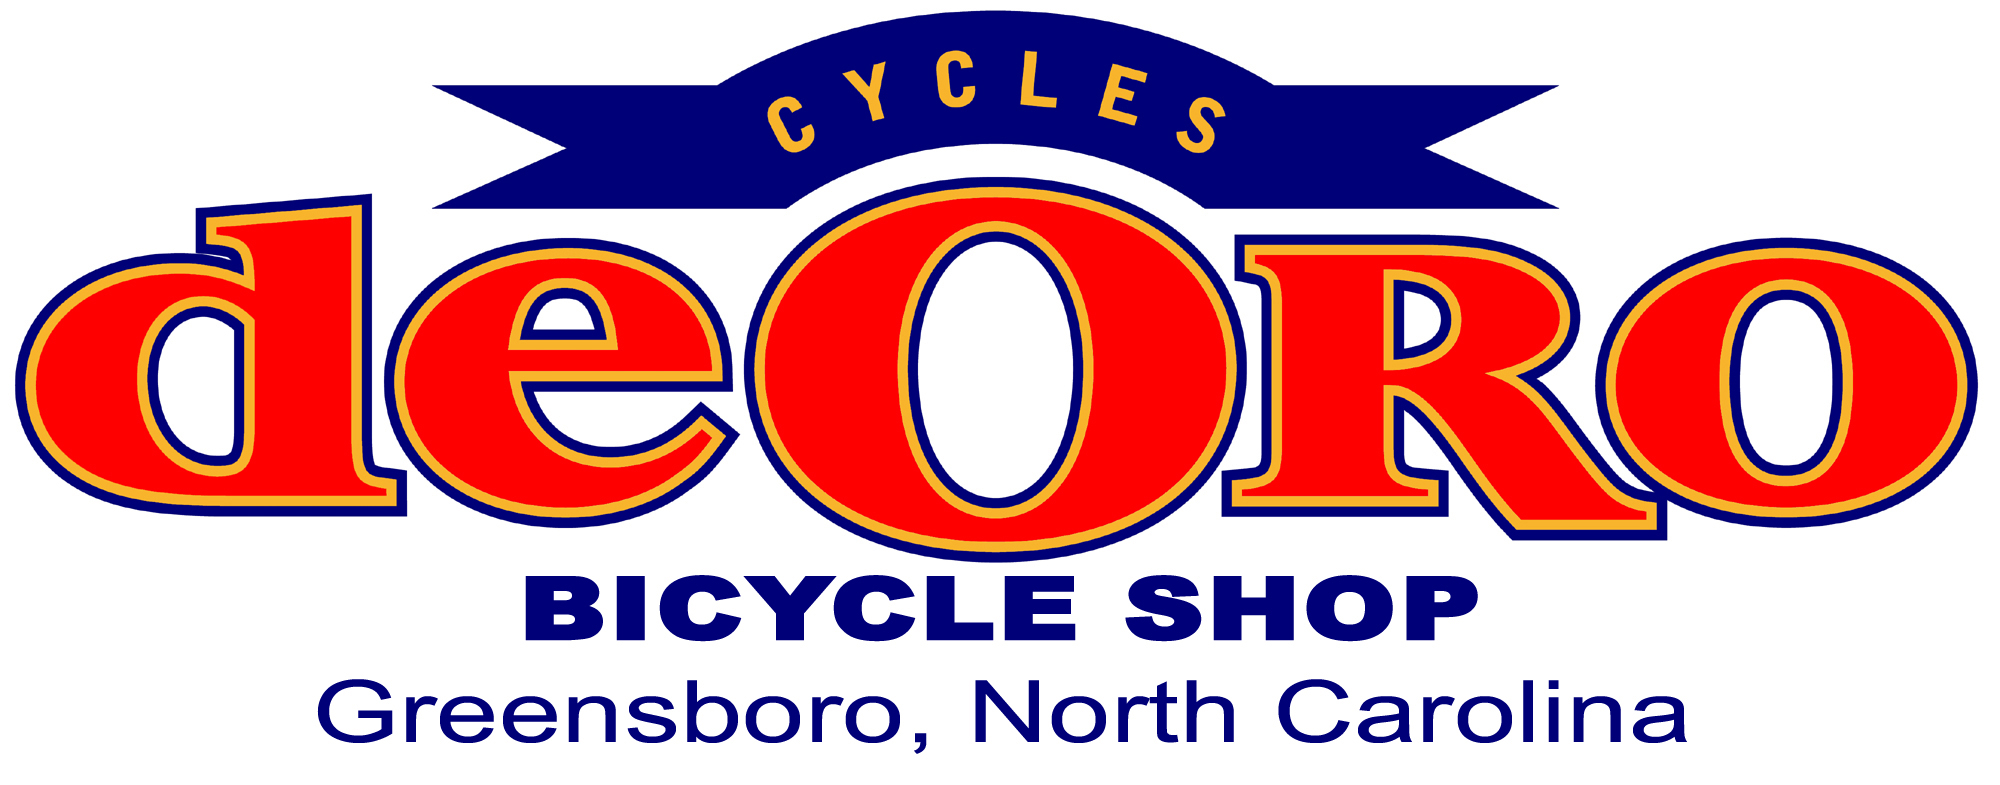 Cycles de Oro Logo.jpg